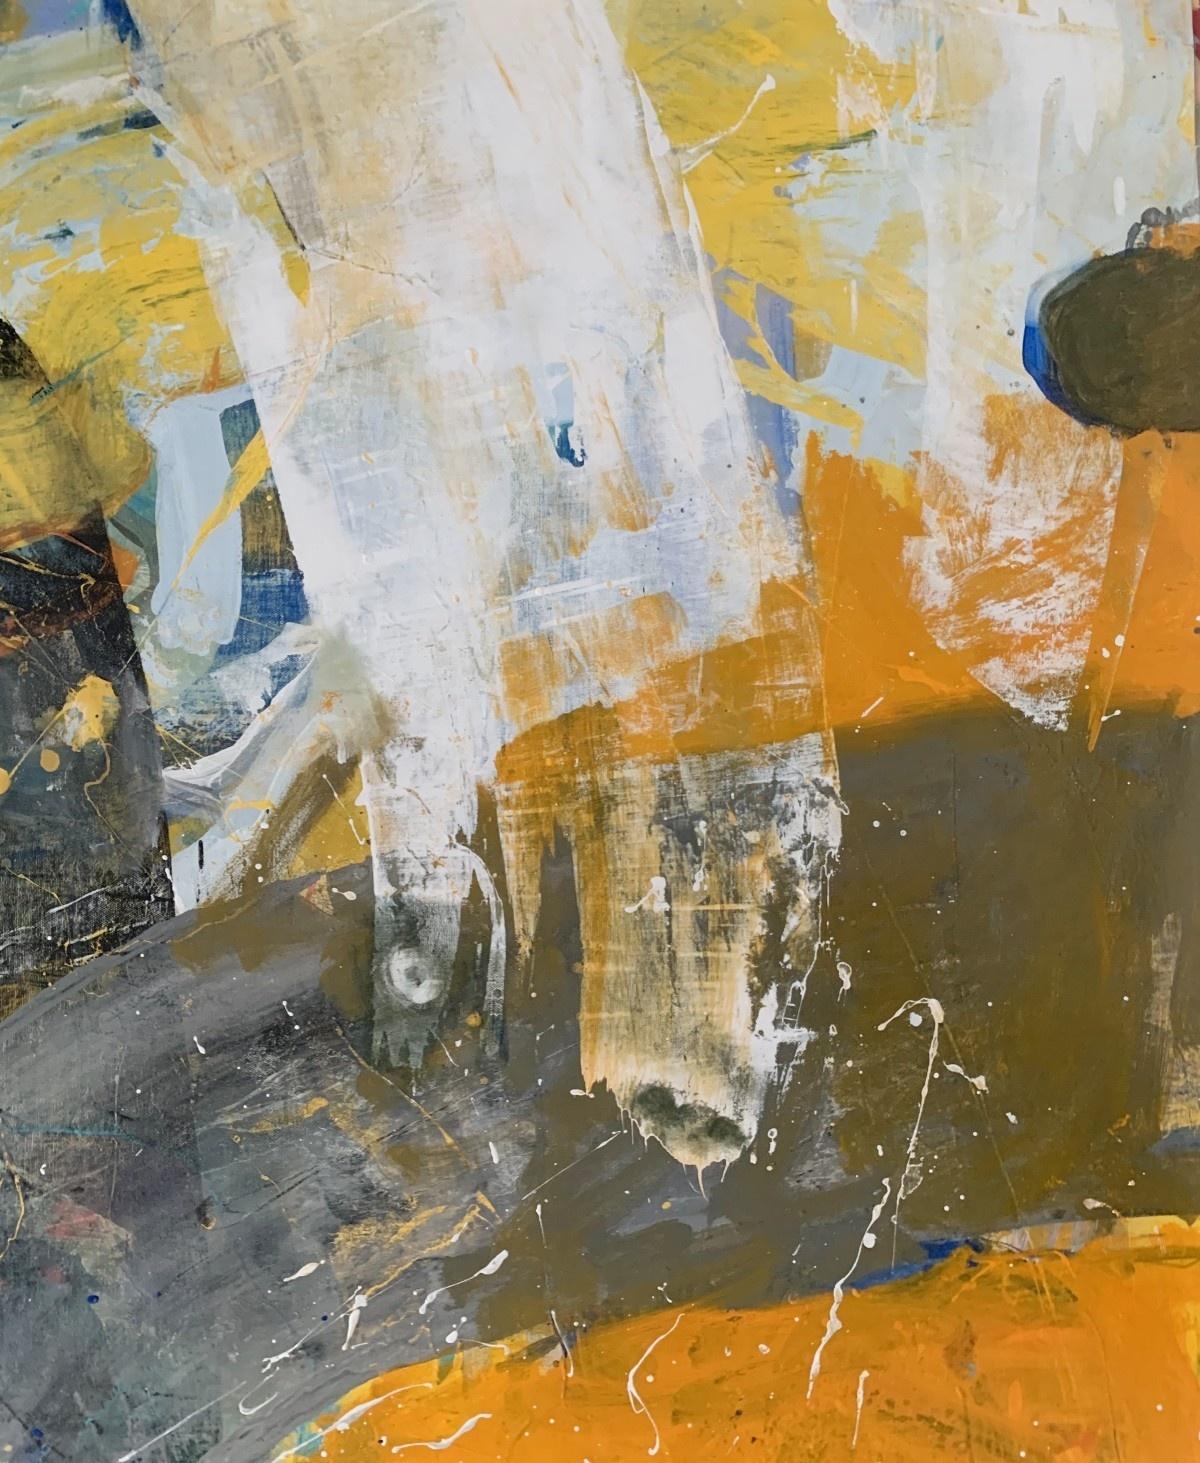 Abstraction - Peinture à l'huile abstraite contemporaine, colorée, dynamique - Contemporain Painting par Monika Rossa